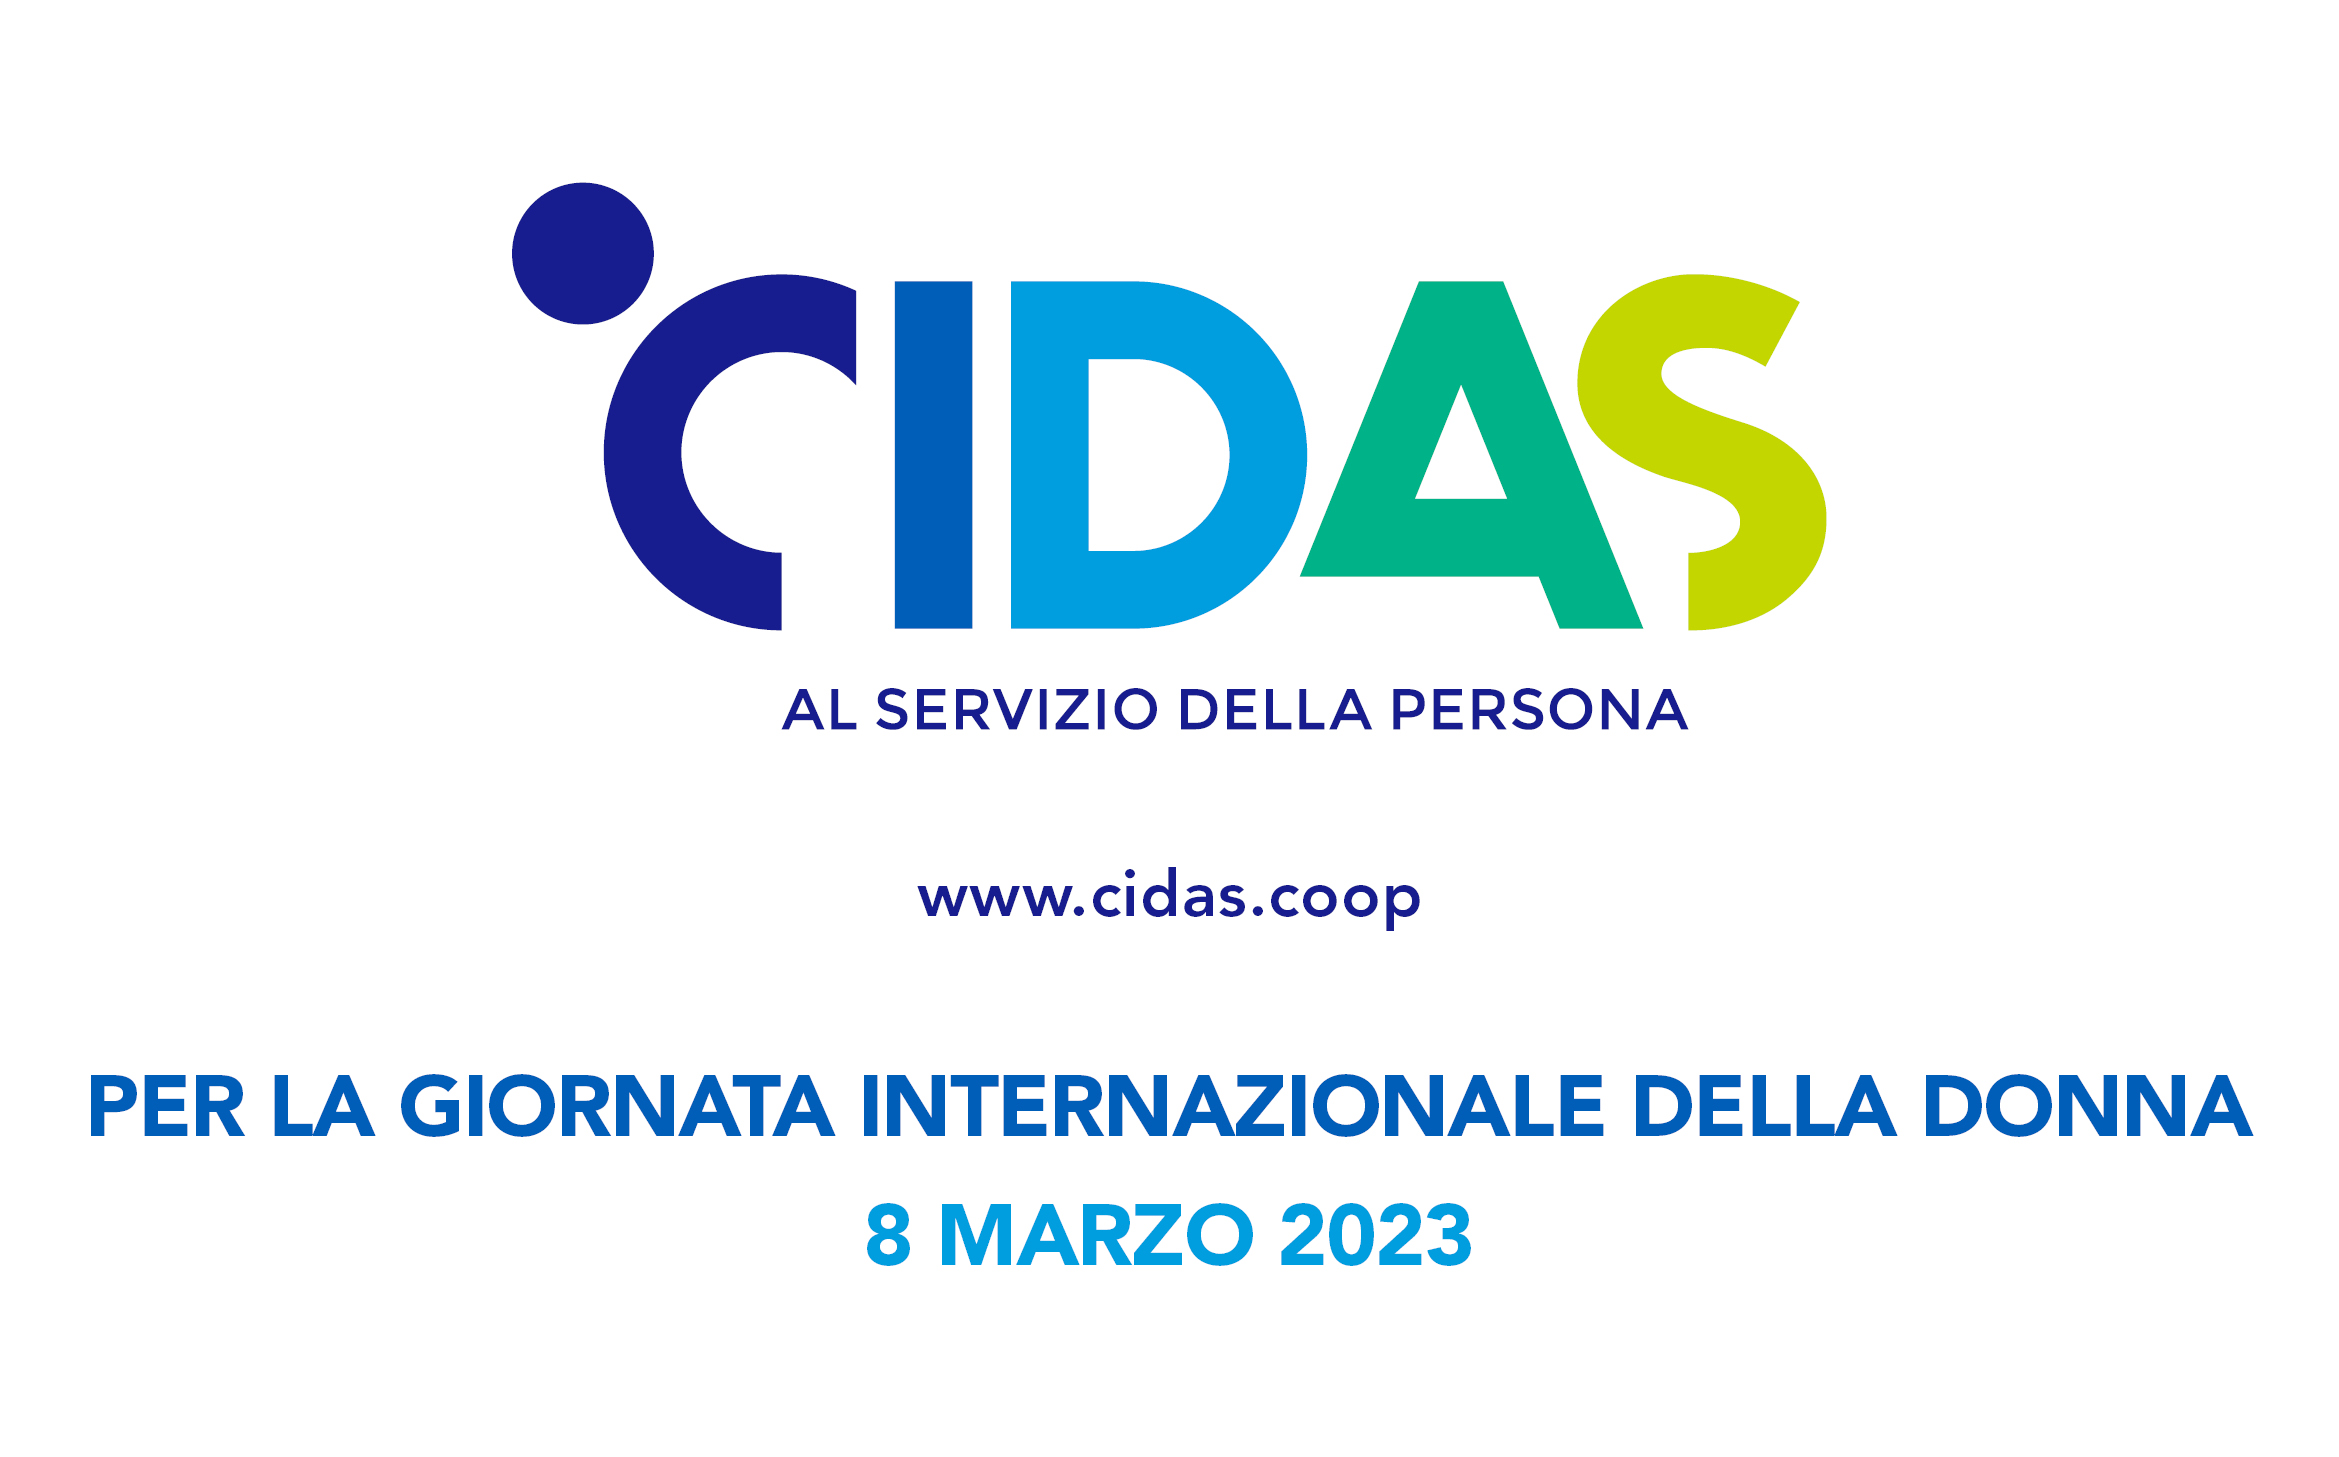 Cooperativa CIDAS sostiene l’associazione italiana Donne per lo sviluppo